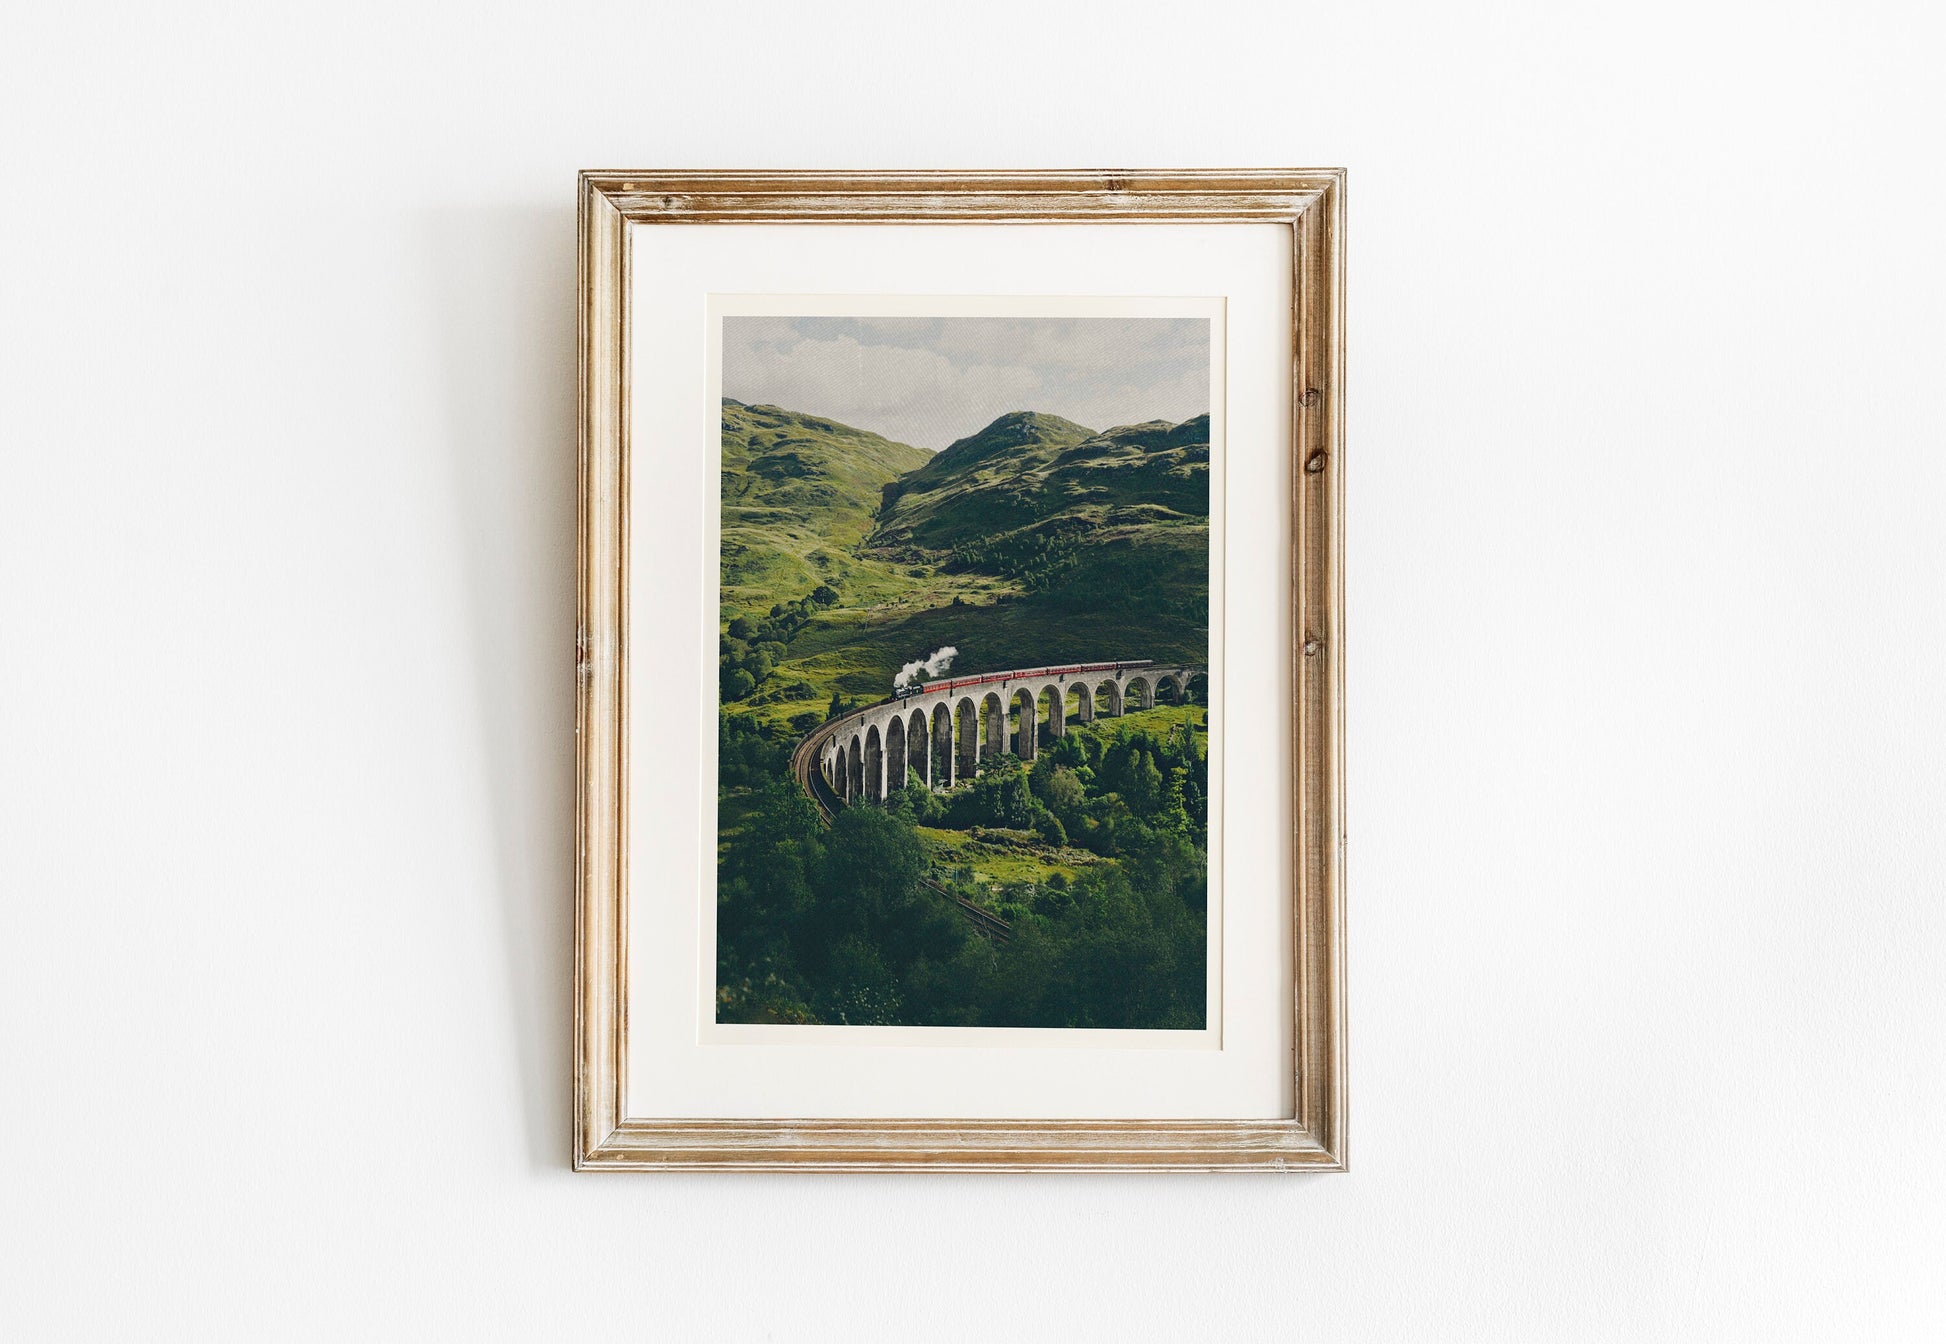 Scotland art print, Glenfinnan Viaduct Print, Oil Paint Style, Scotland, Glenfinnan, Steam Train wall art, Scotland Wall Decor, Landscape,